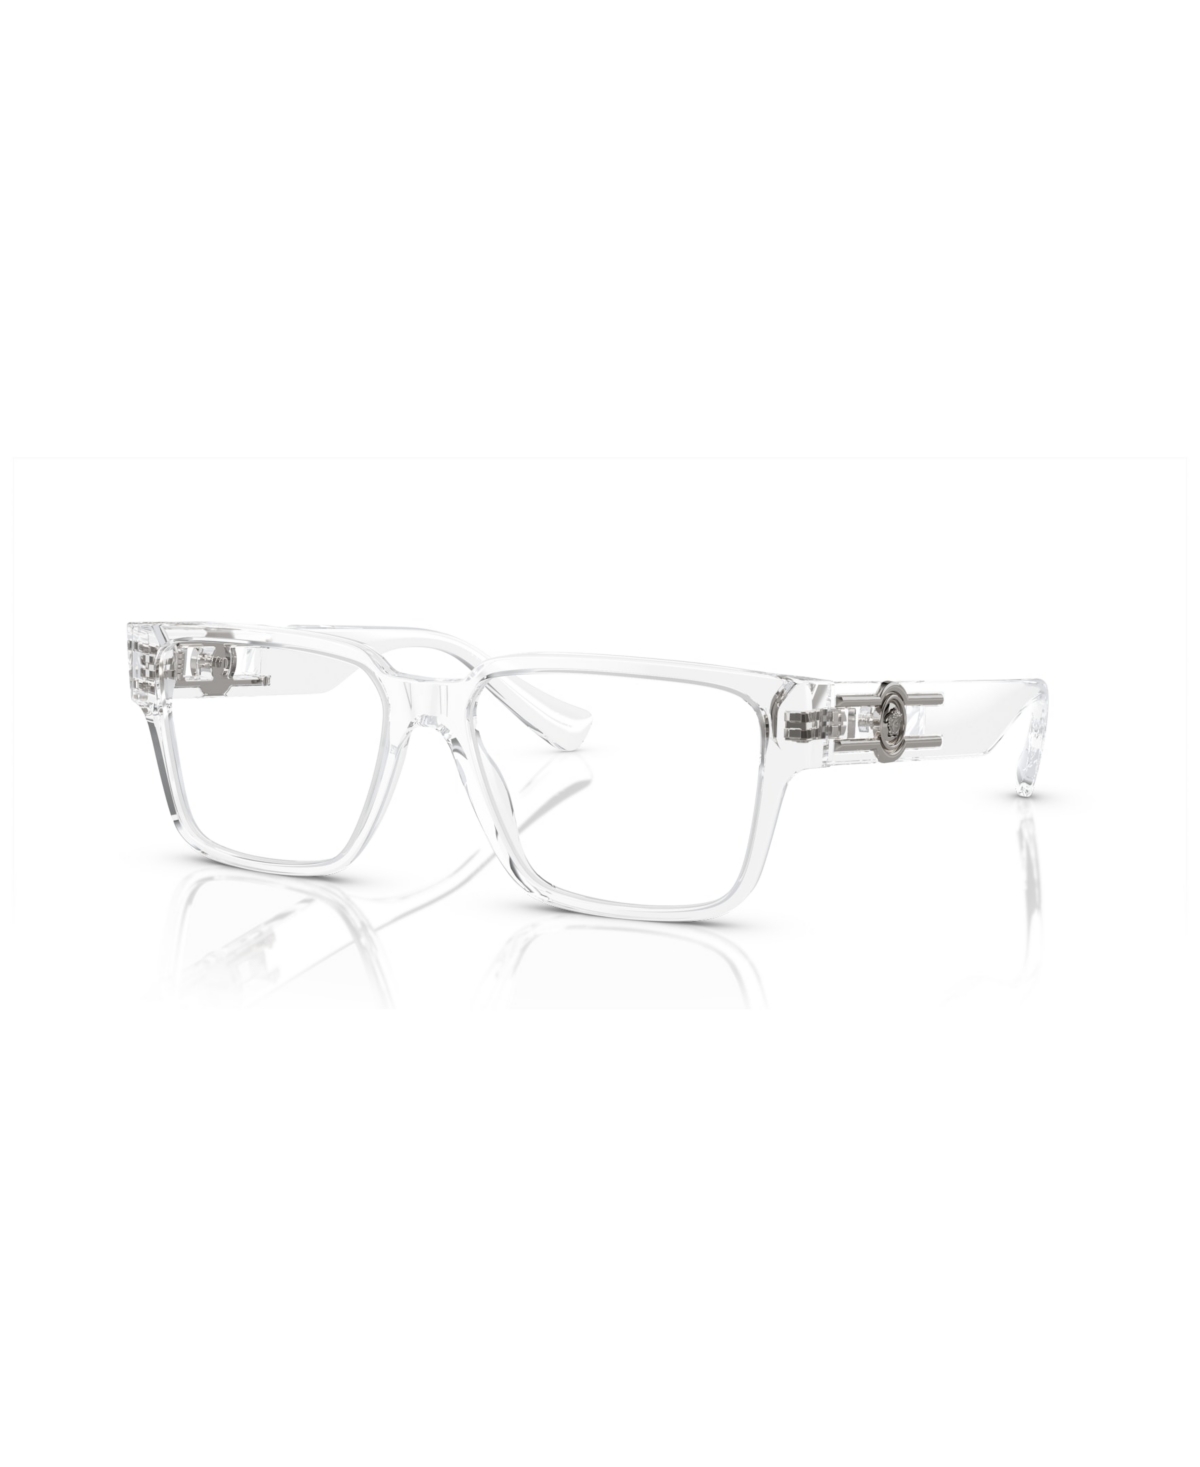 Men's Eyeglasses, VE3346 - Black